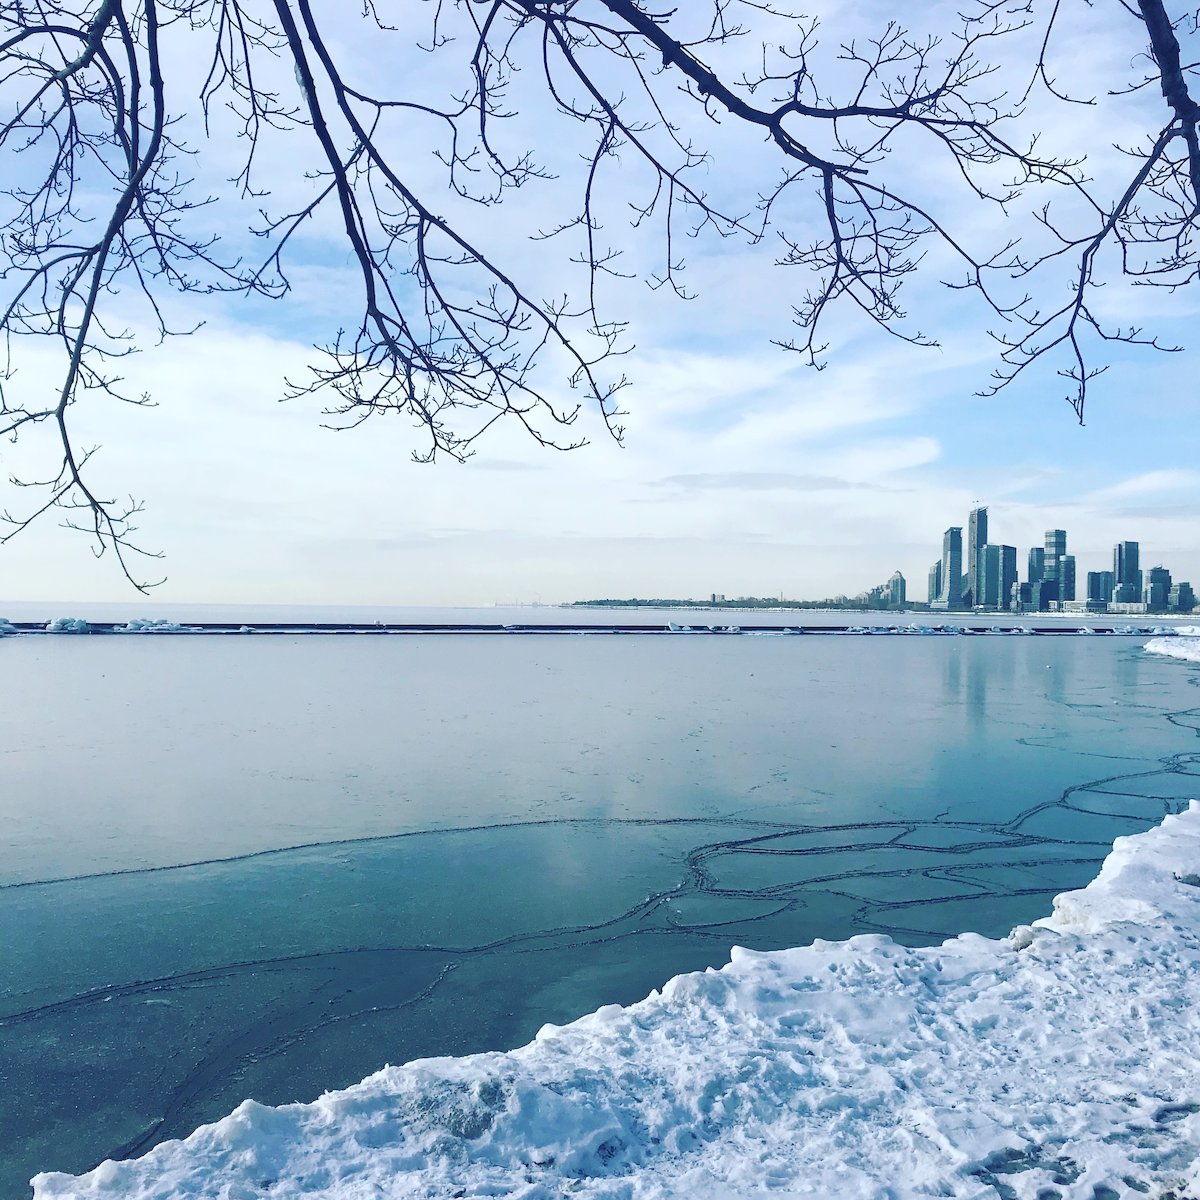 Toronto au fond, lac gelé en premier plan